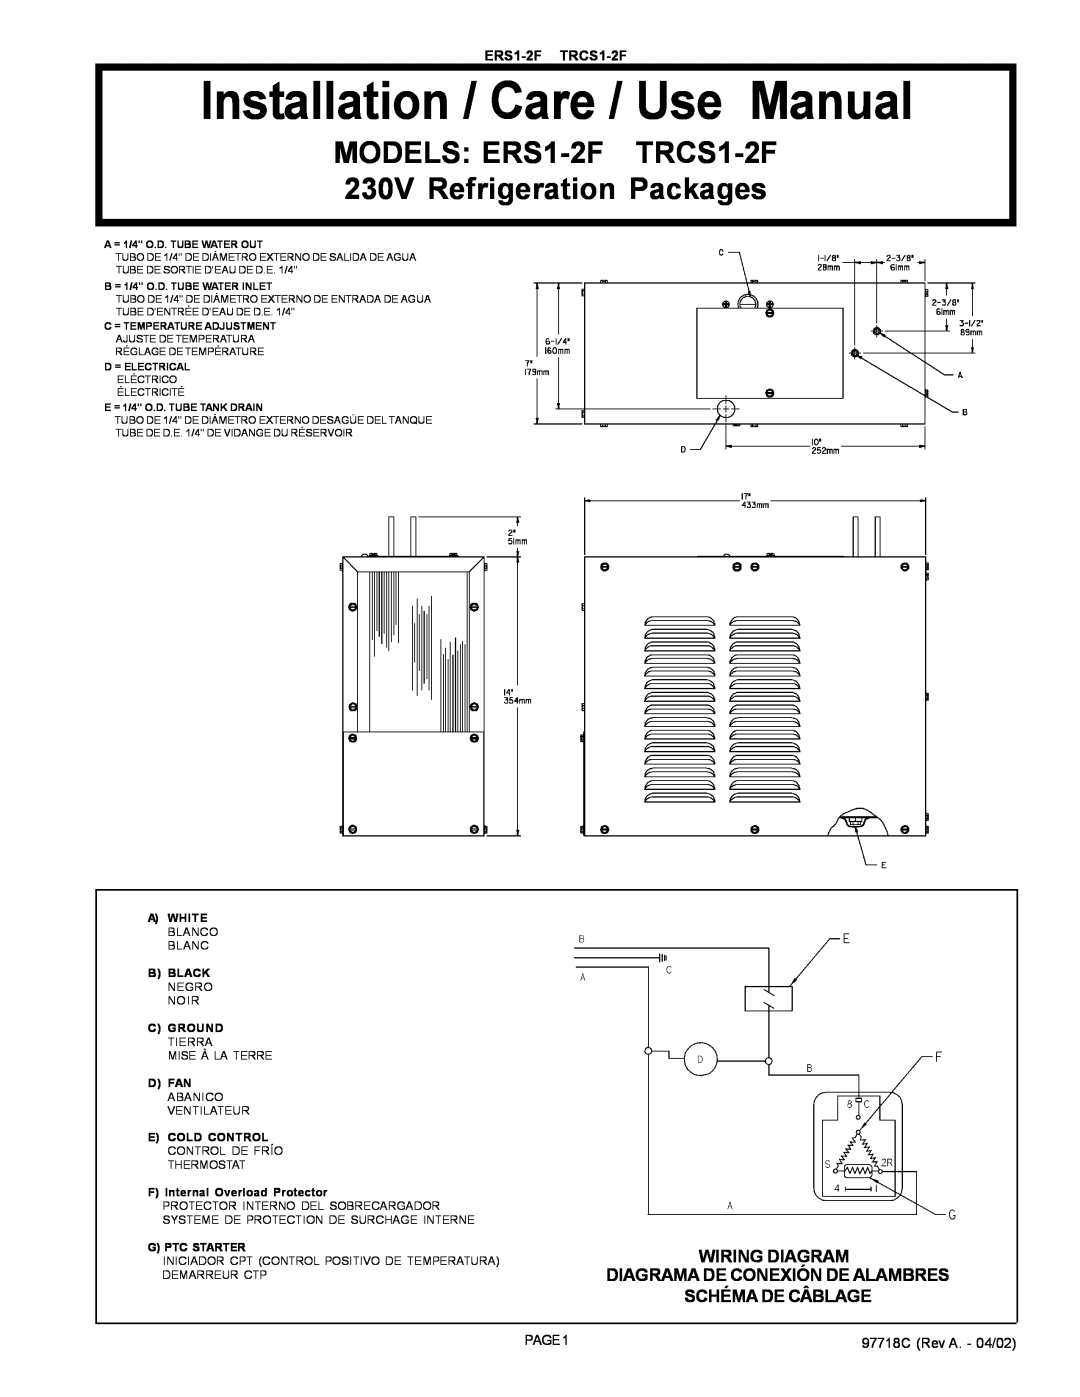 Elkay ERS1-2F manual Installation / Care / Use Manual, Wiring Diagram Diagrama De Conexión De Alambres, Schéma De Câblage 